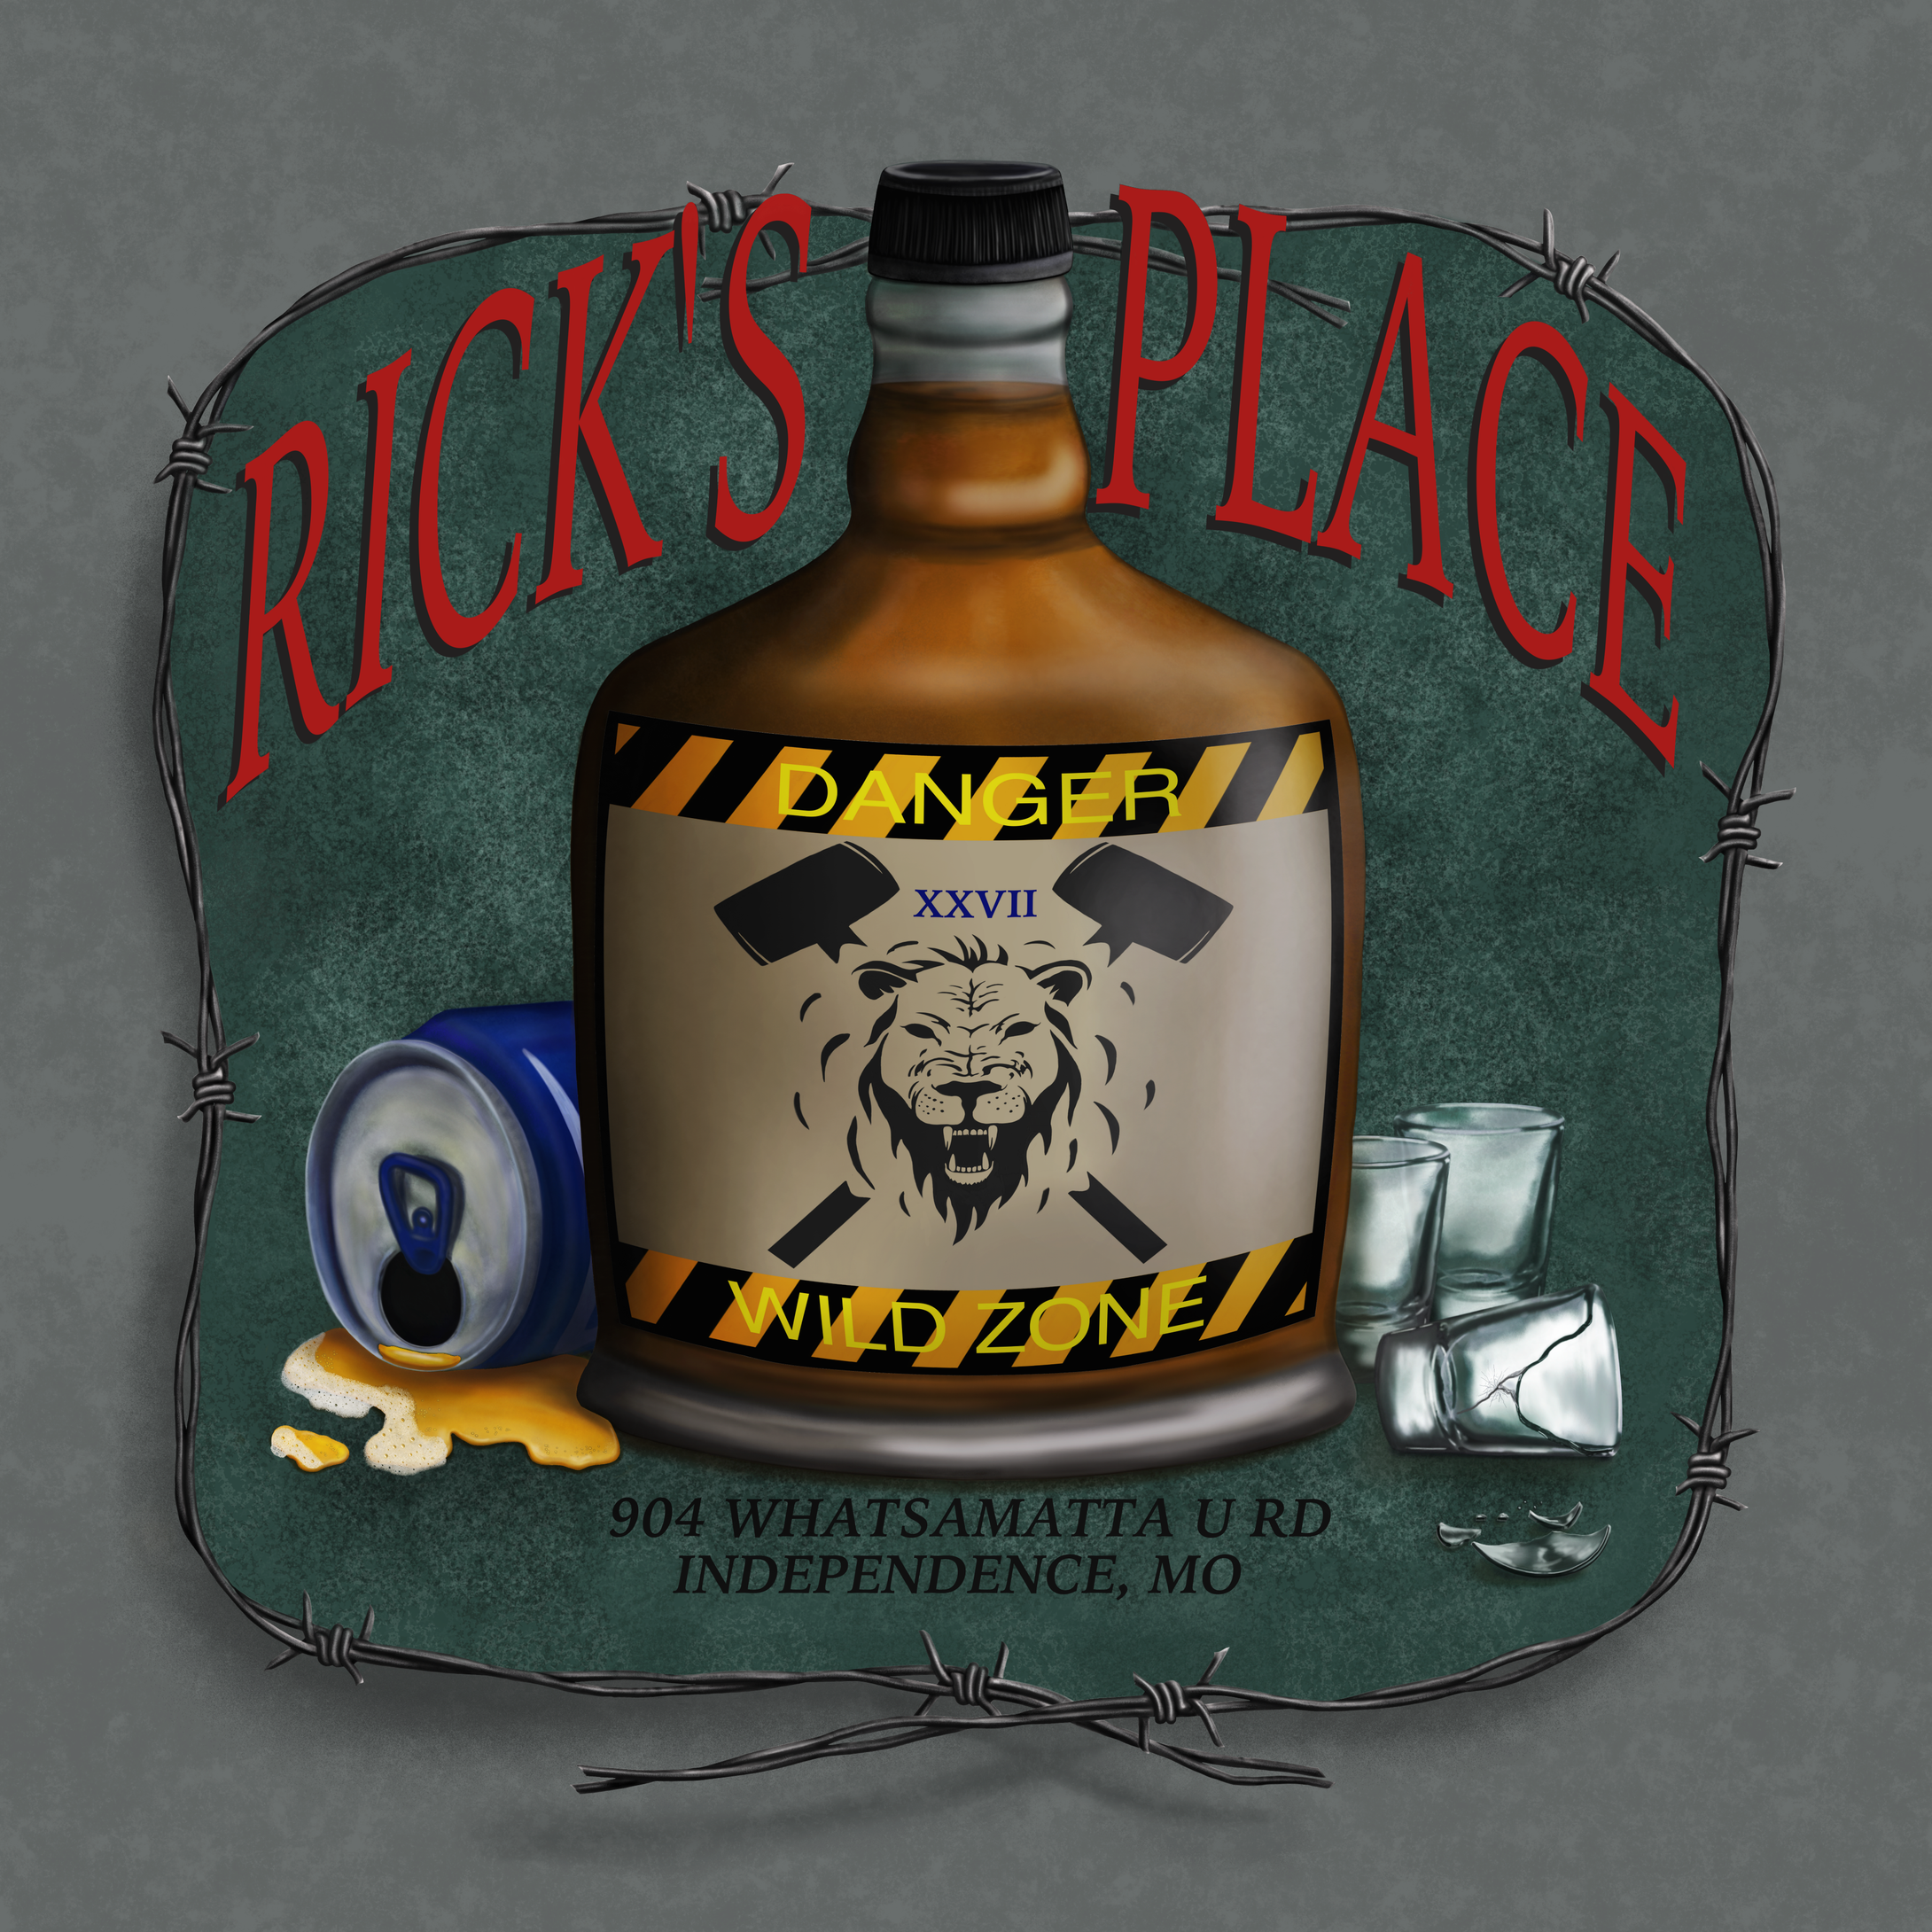 RICK'S PLACE